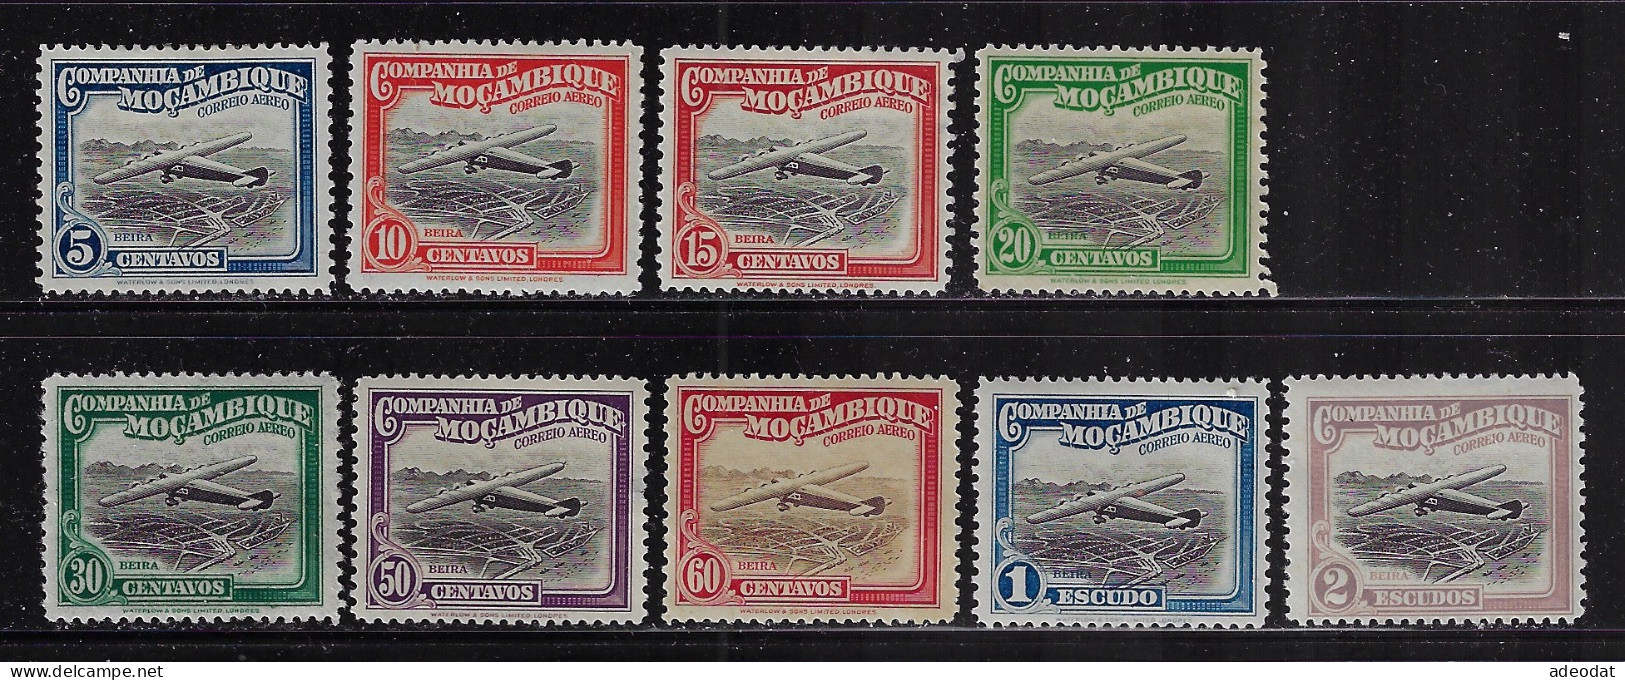 MOZAMBIQUE COMPANY 1935  SCOTT#C1-C5,C8,C9,C11,C12  MH CV $3.55 - Mozambique